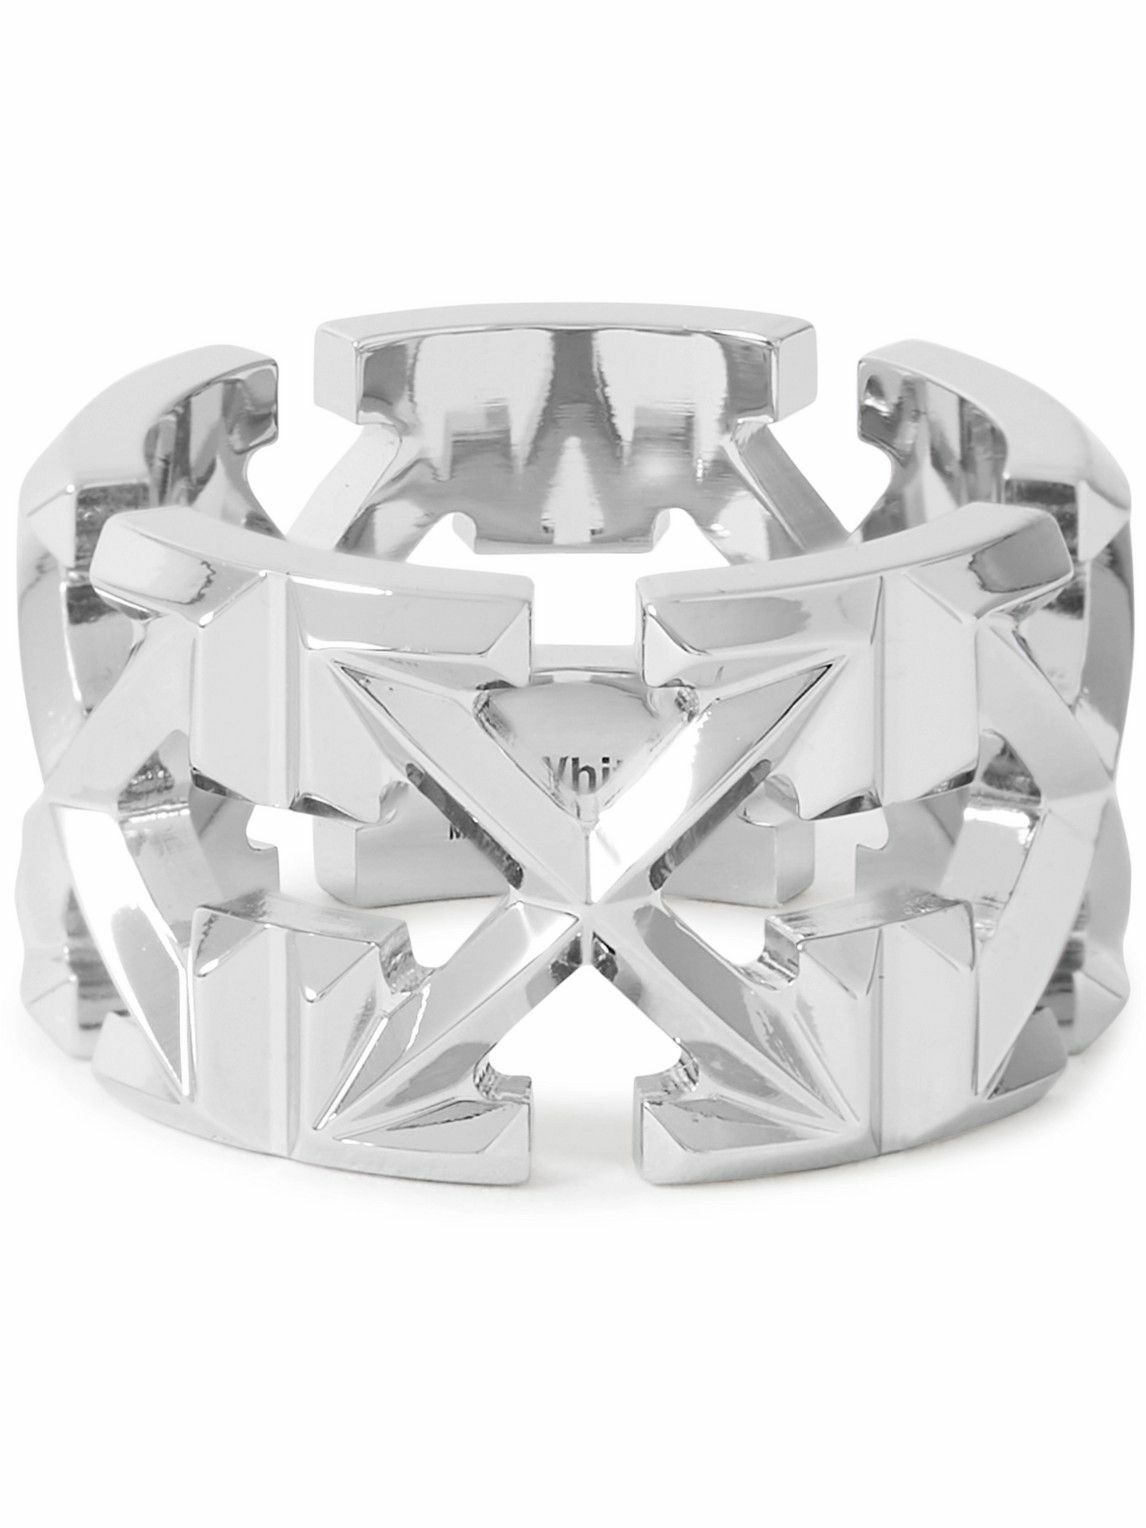 Off-White C/O Virgil Abloh Logo-Debossed Silver-Toned Brass Ring